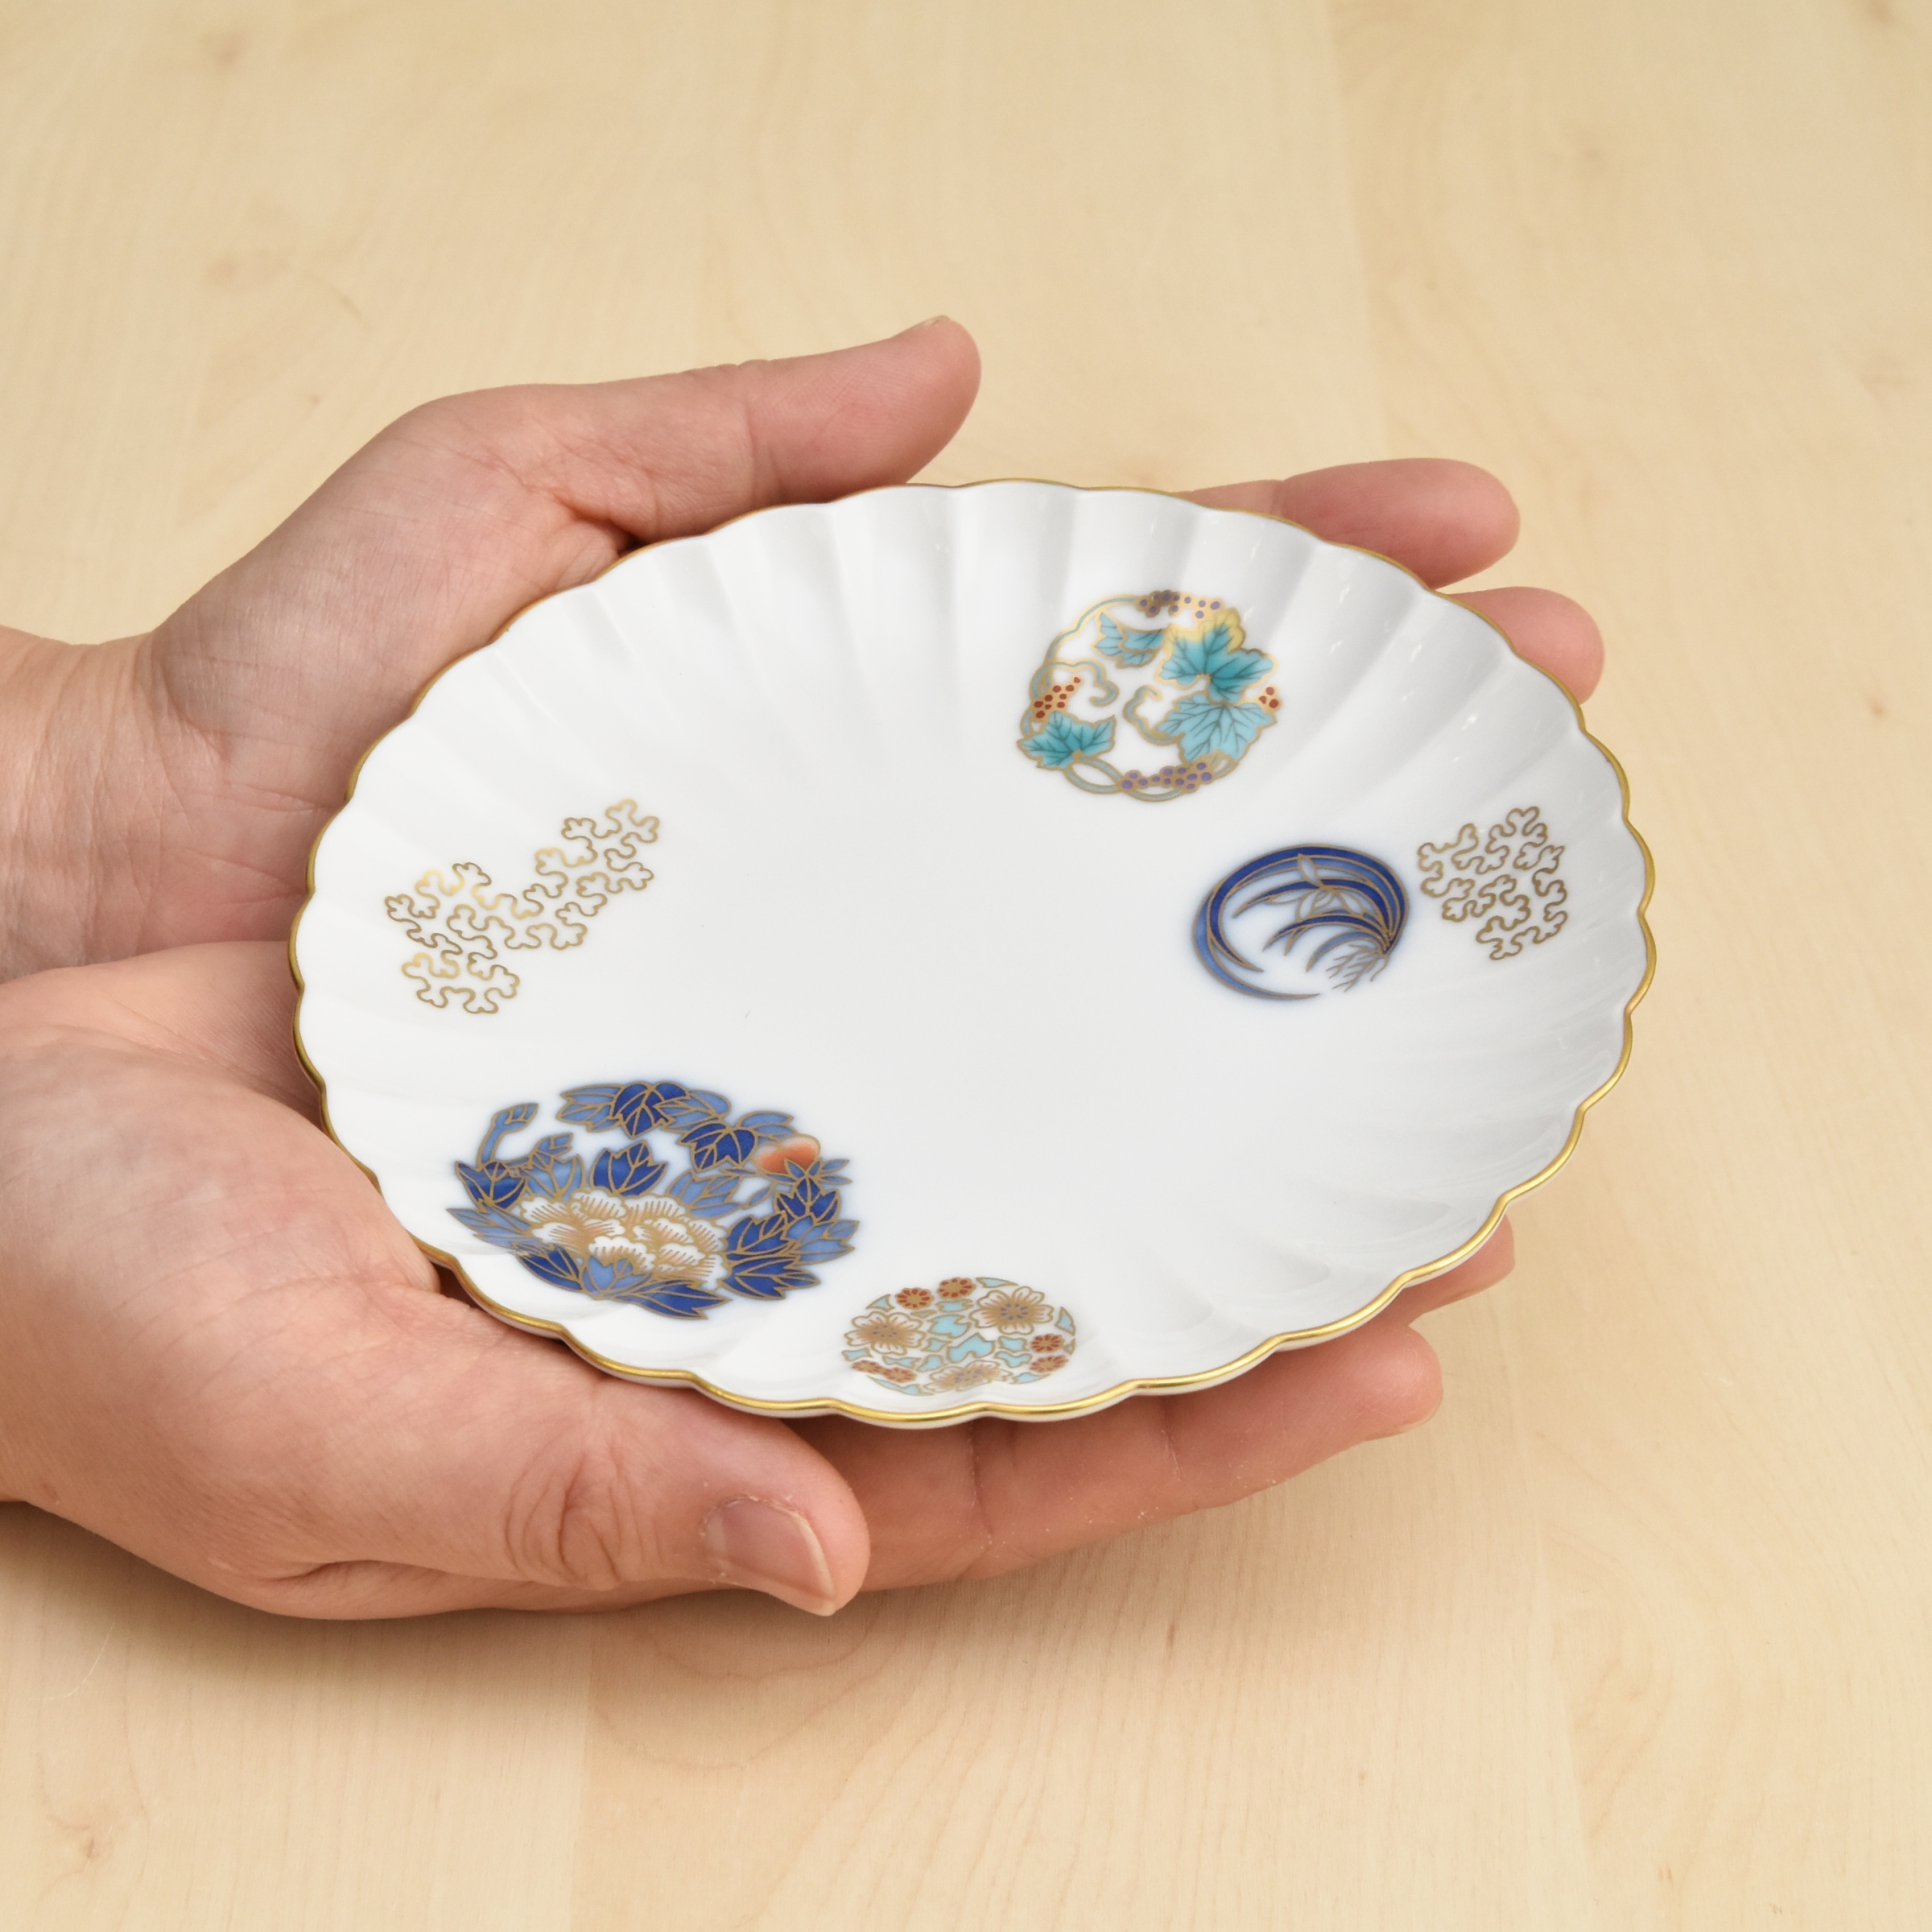 お皿は菊型になっていて、おしゃれです。小さめのとりわけ皿としてや、お菓子などをのせて使うのに良いサイズです。